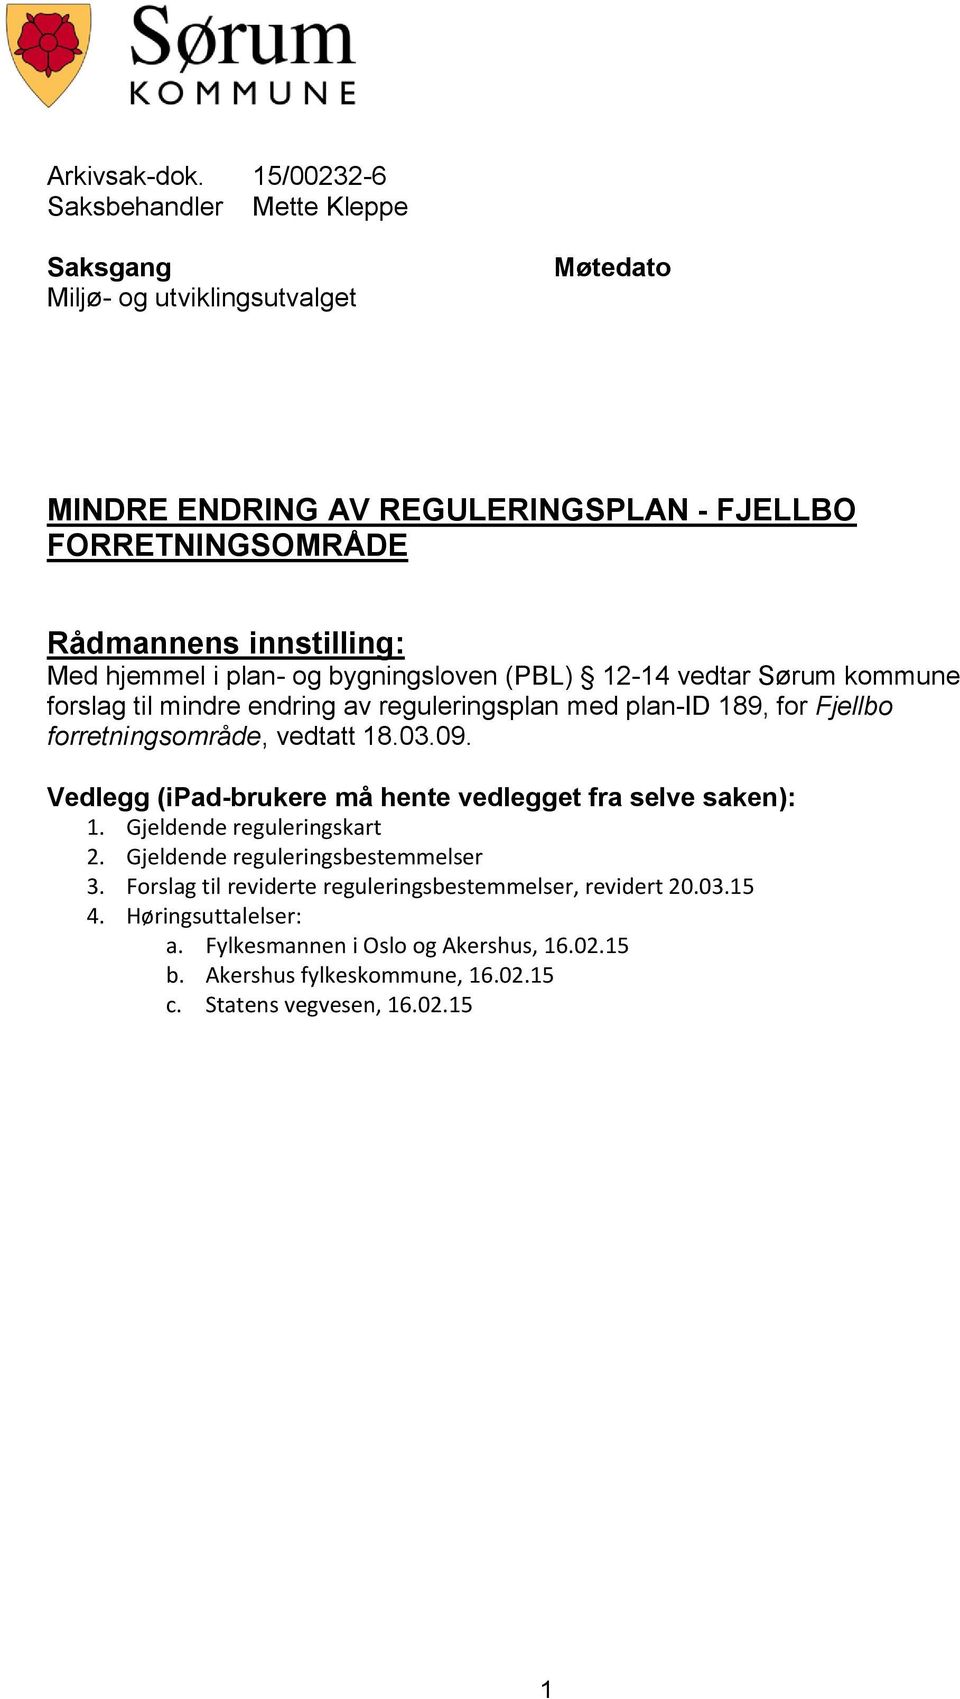 Med hjemmel i plan- og bygningsloven (PBL) 12-14 vedtar Sørum kommune forslag til mindre endring av reguleringsplan med plan-id 189, for Fjellbo forretningsområde, vedtatt